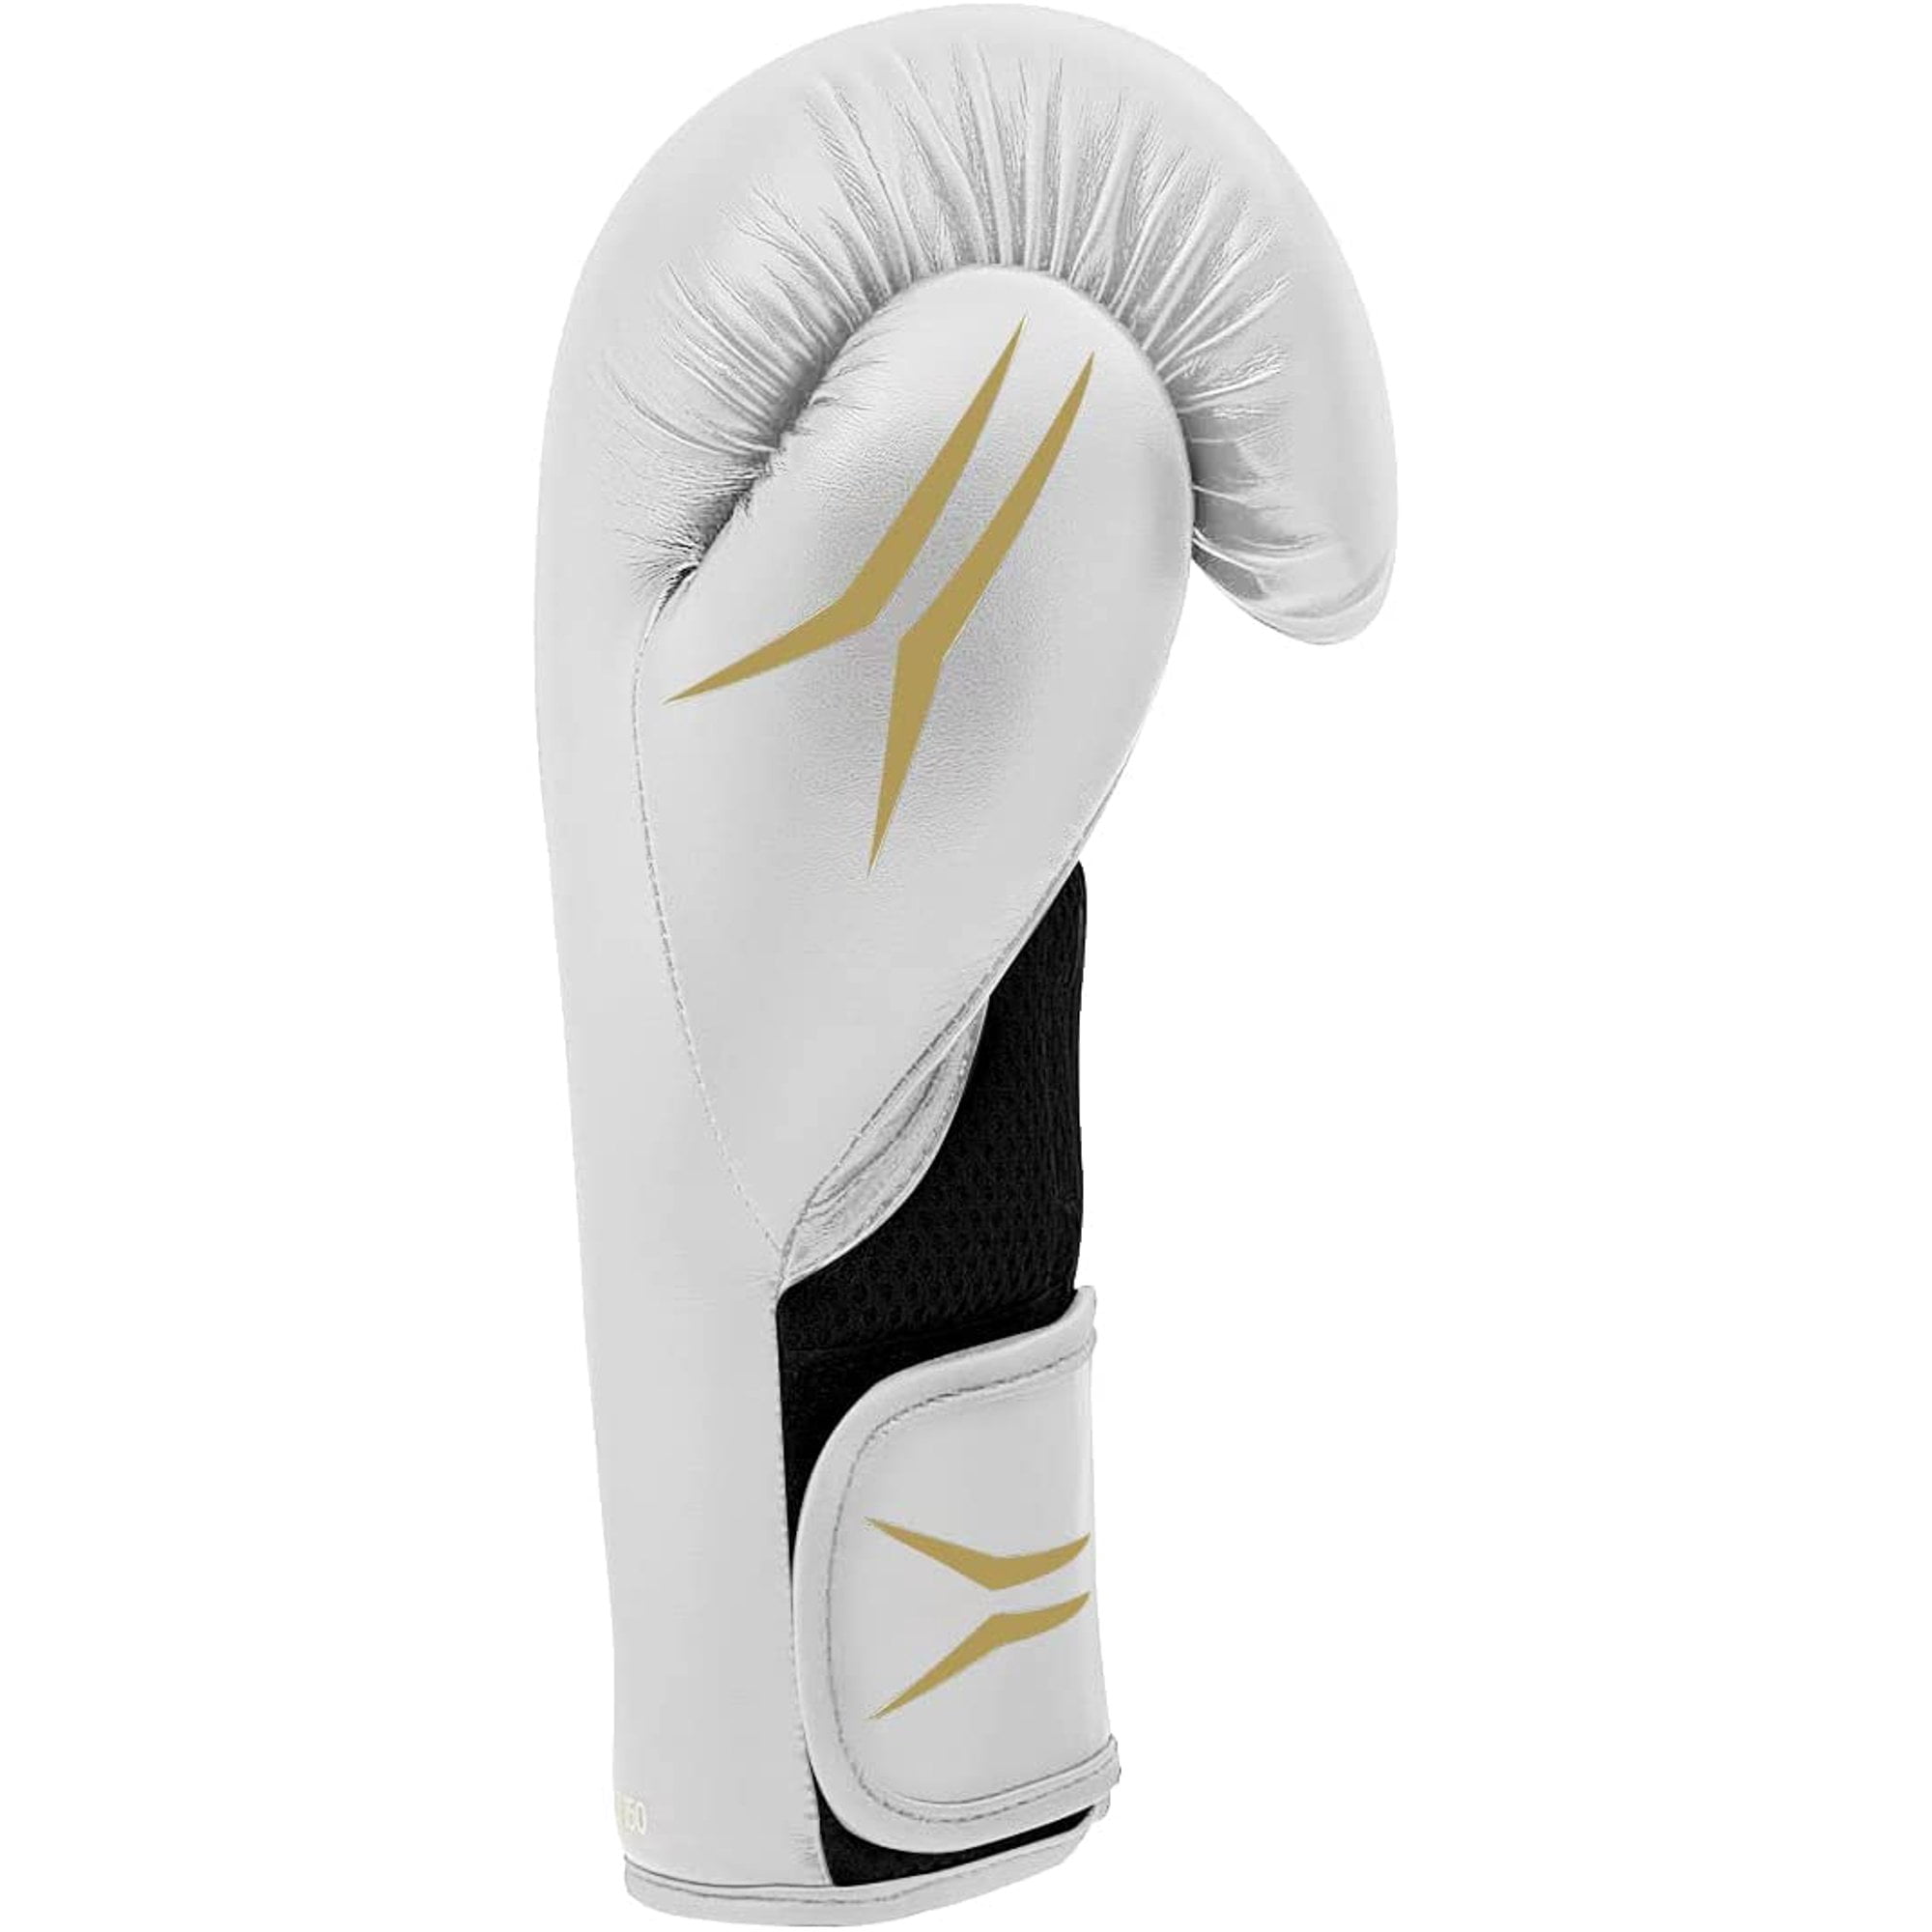 Adidas Speed Boxing Men, Women, - 150 Gloves TILT for Fighting 10oz and Gloves White/Gold/Black, Unisex, Training